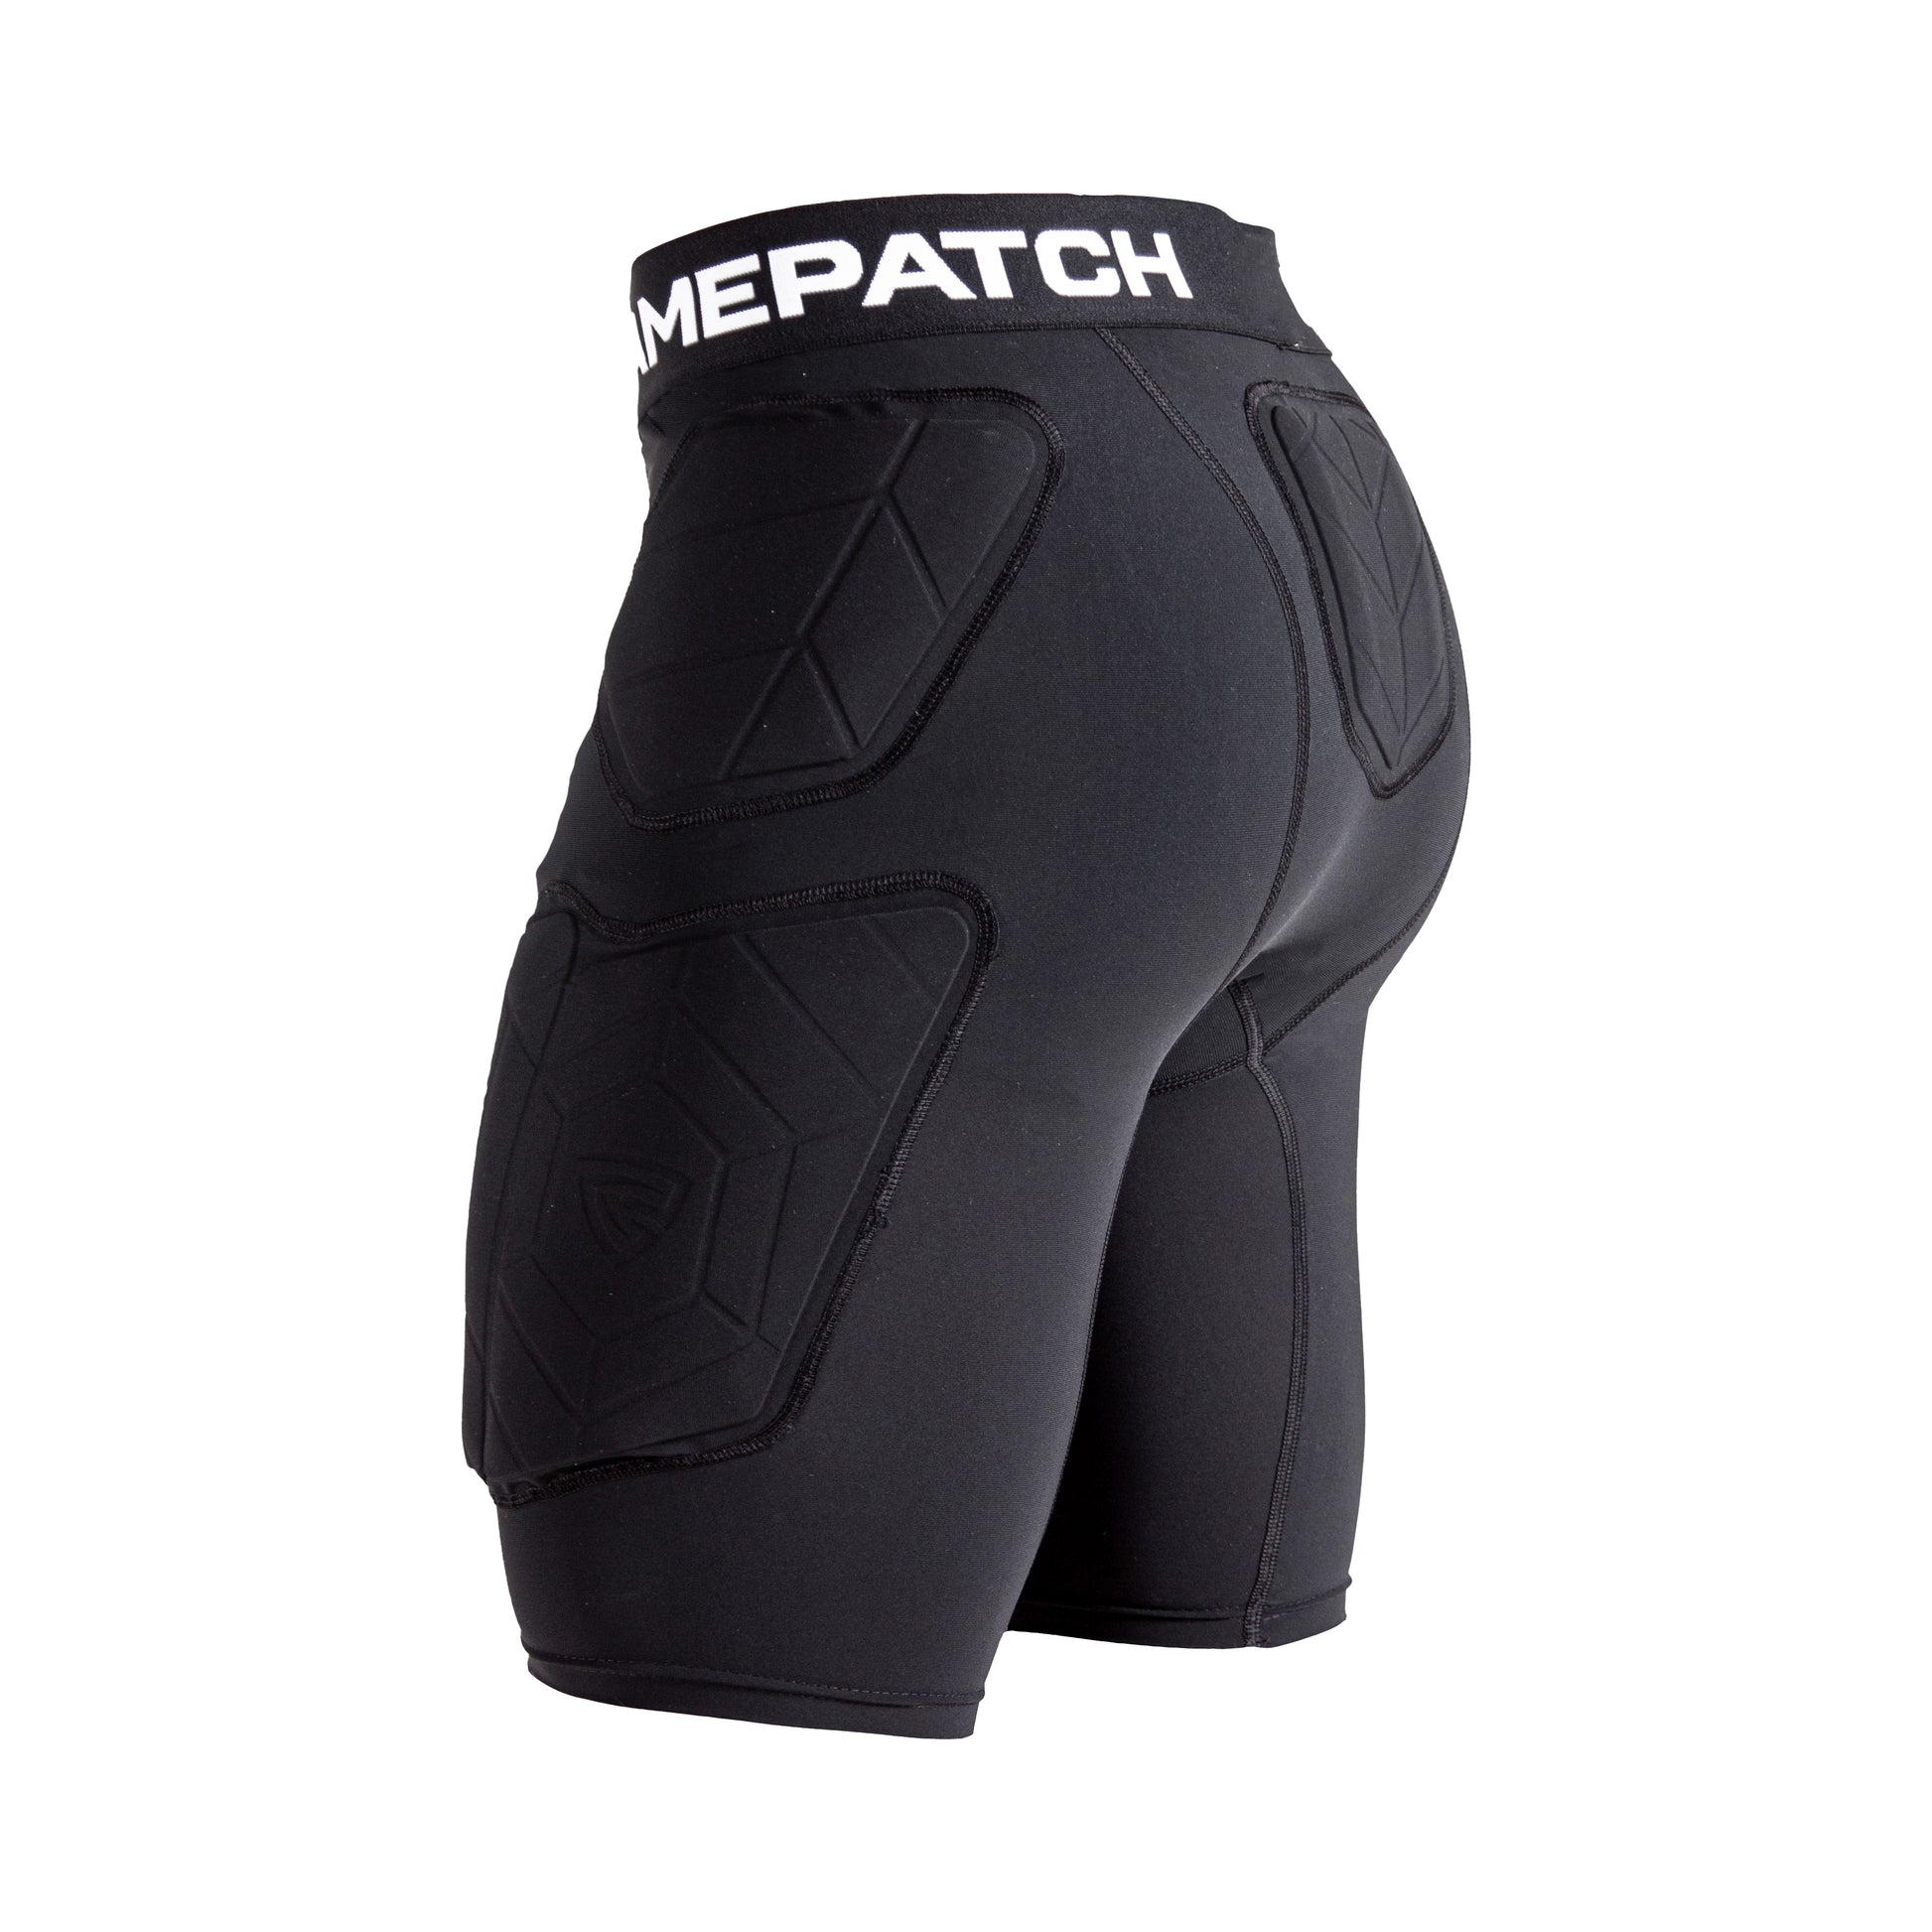 Padded compression shorts PRO + Compression stuttbuxur með vörn –  Sporthlífar